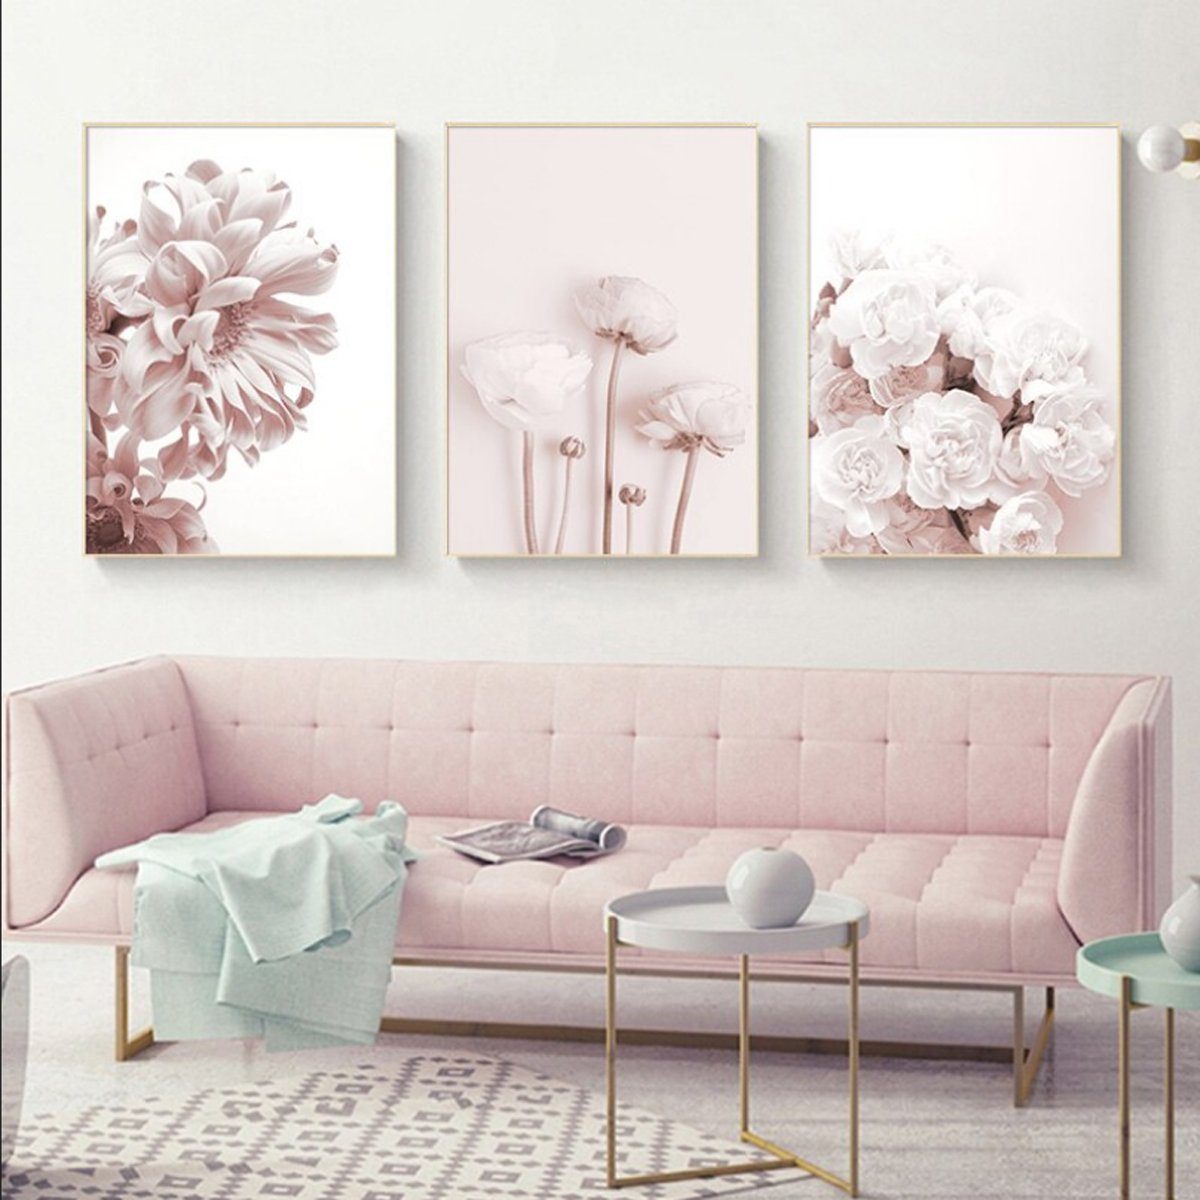 TPFLiving Kunstdruck (OHNE RAHMEN) Poster - Leinwand - Wandbild, Rosa Blumen und Blüten - Wanddeko Wohnzimmer - (13 verschiedene Größen zur Auswahl - Auch im günstigen 3-er Set), Farben: Pink und Weiß - Größe: 50x70cm